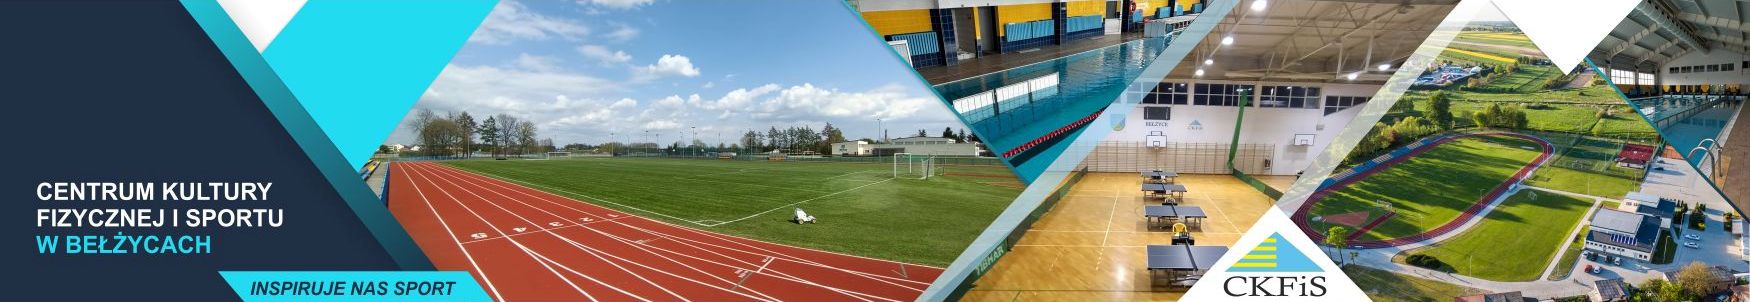 Centrum Kultury Fizycznej i Sportu w Bełżycach